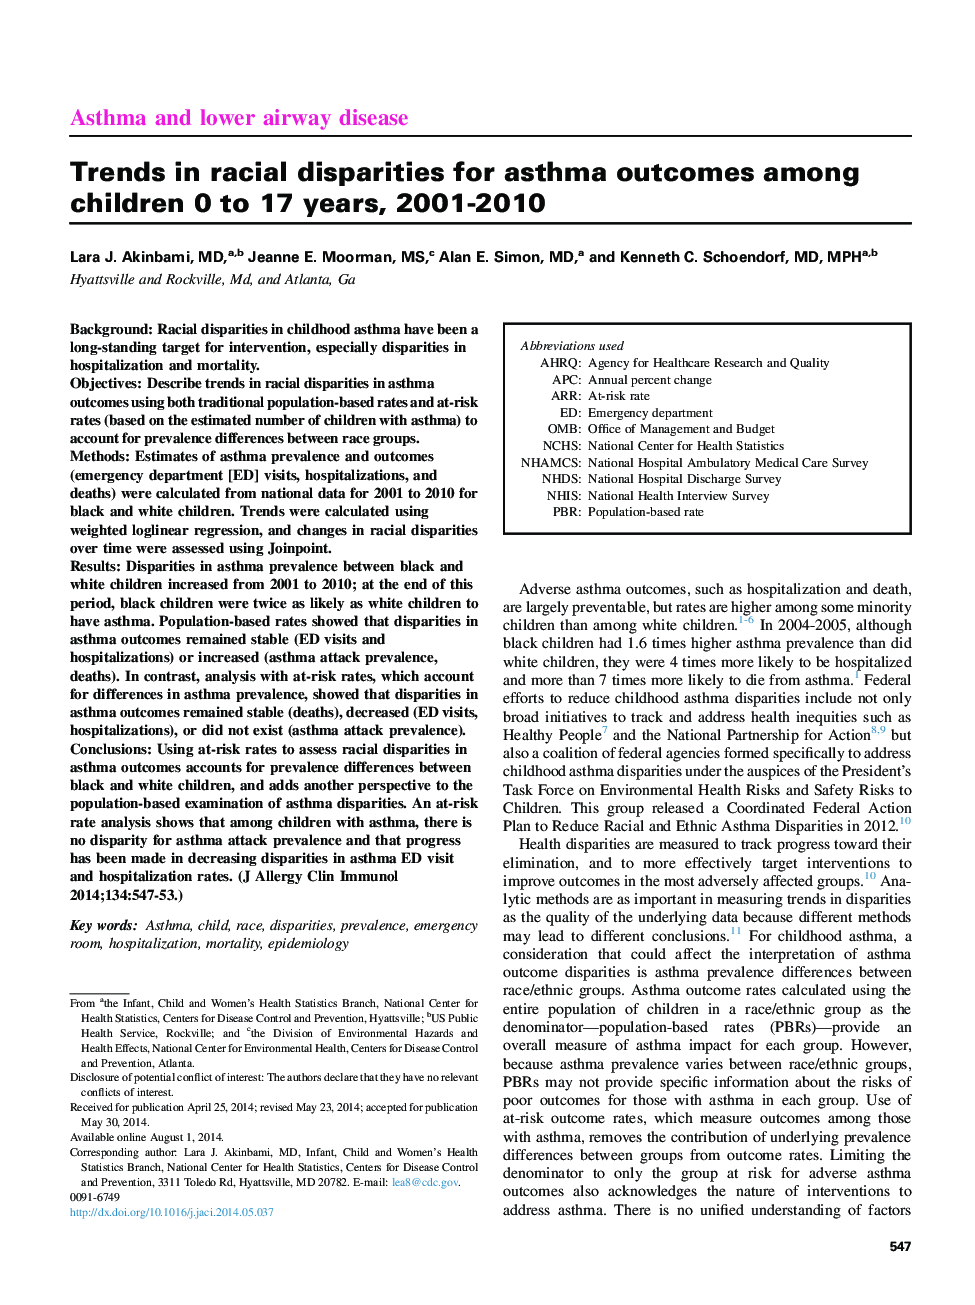 روند ناسازگاری نژادی در مورد نتایج آسم در کودکان 0 تا 17 سال، 2001-2010 